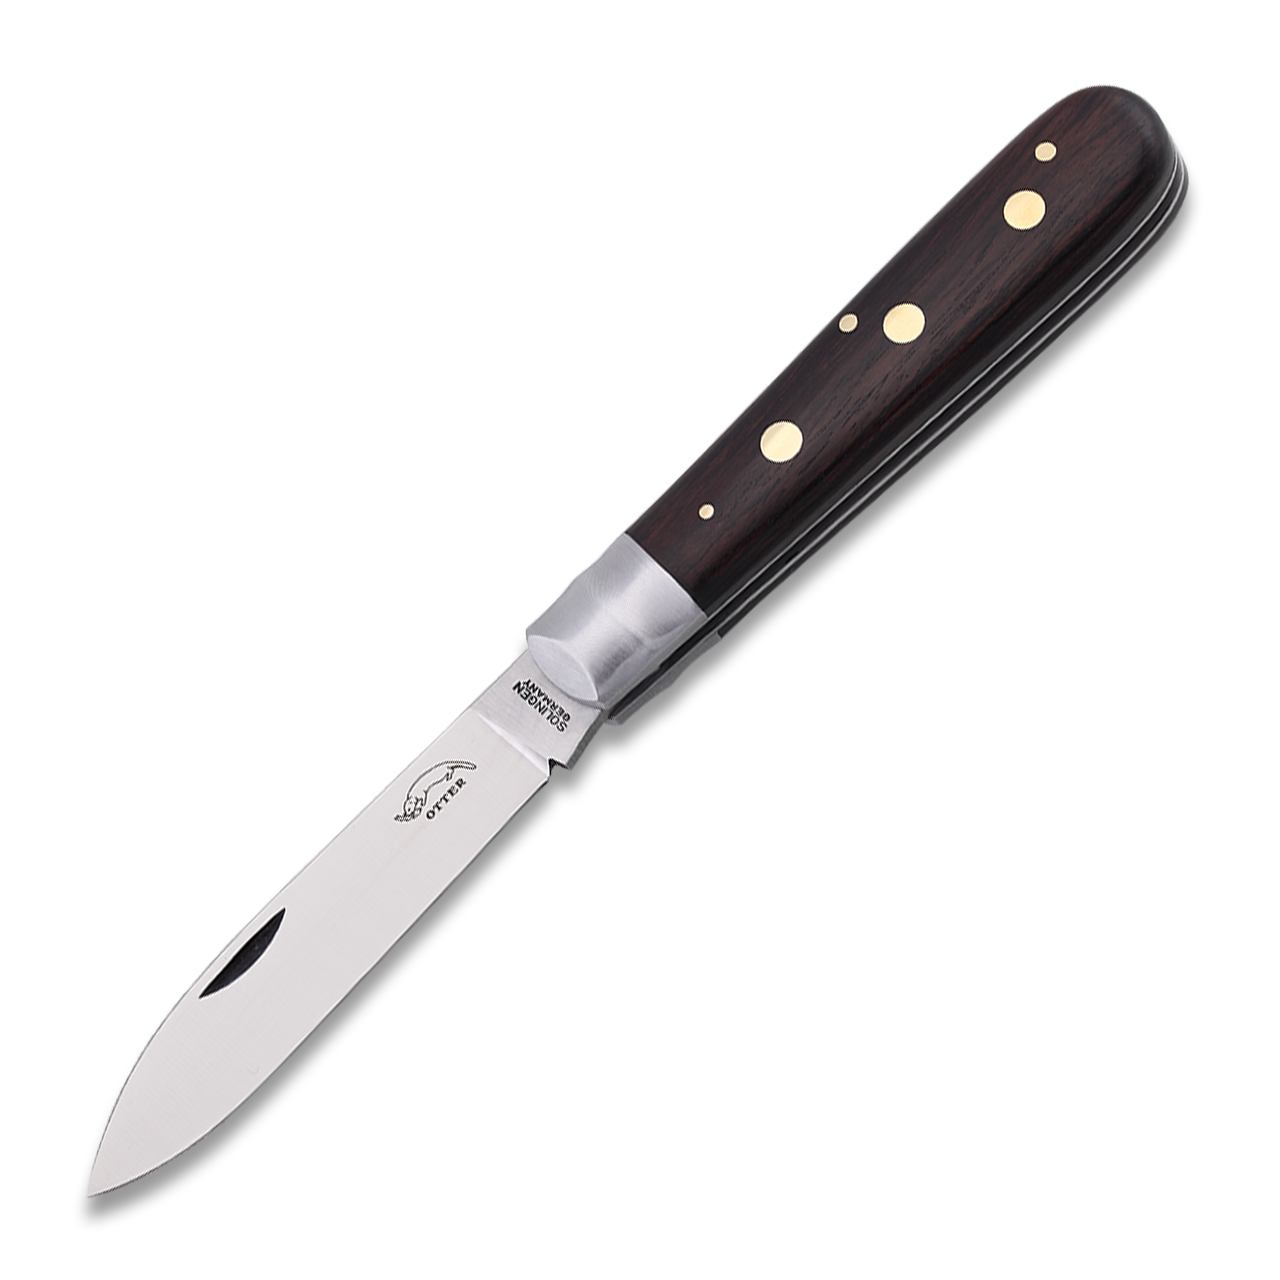 Otter Messer - Mercator Knife Stainless Steel